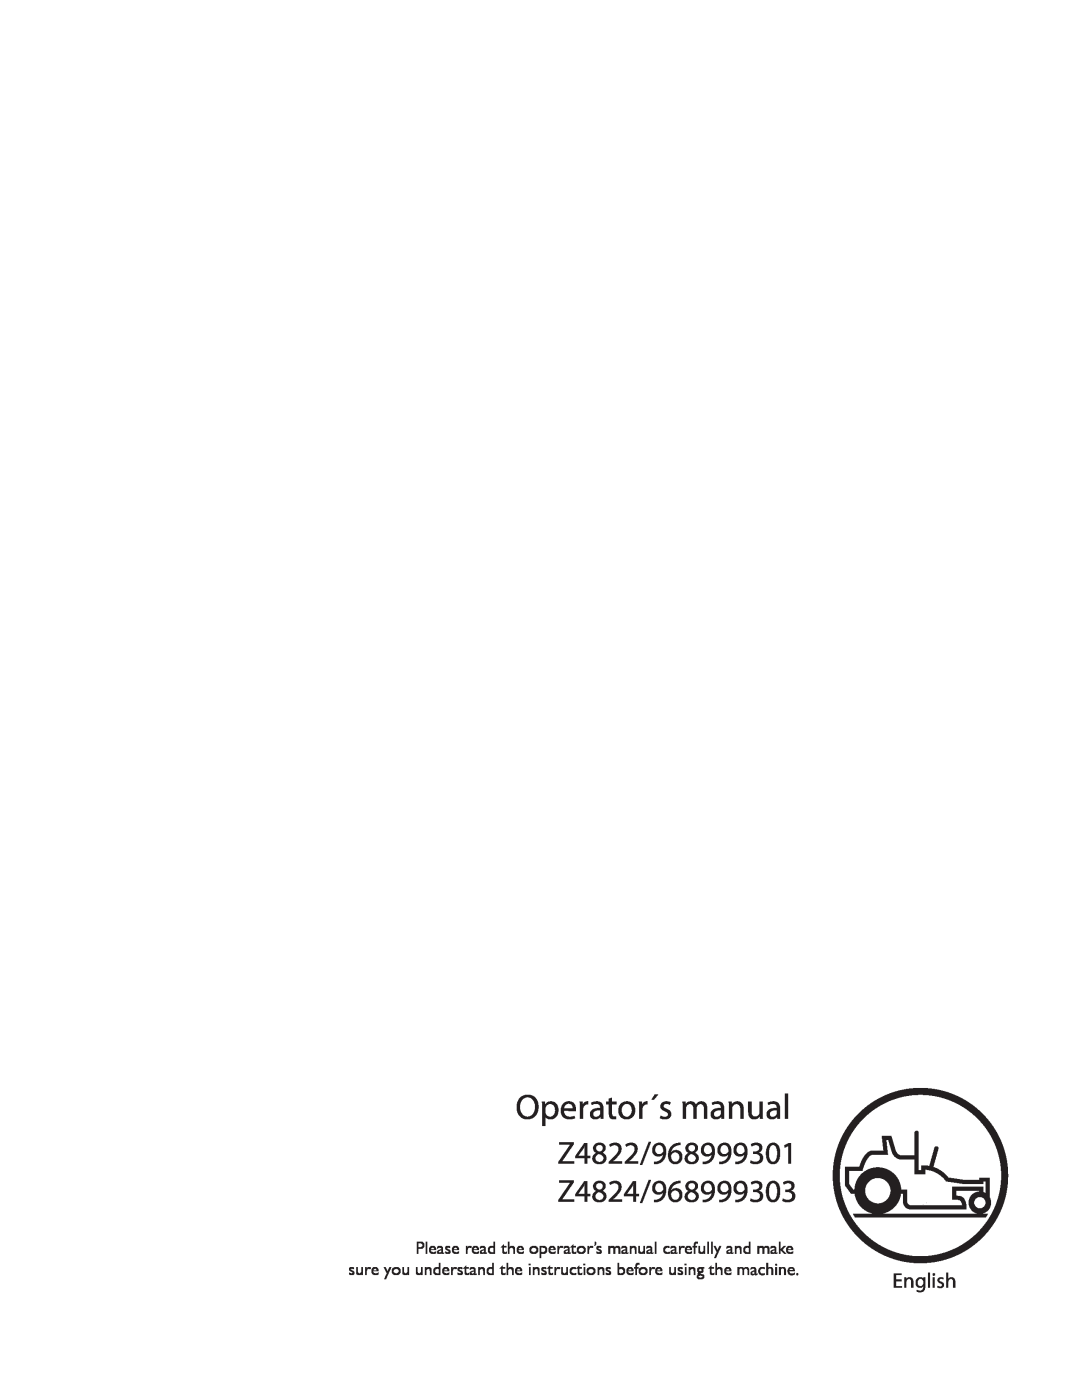 Husqvarna manual Operator´s manual, Z4822/968999301 Z4824/968999303, English 